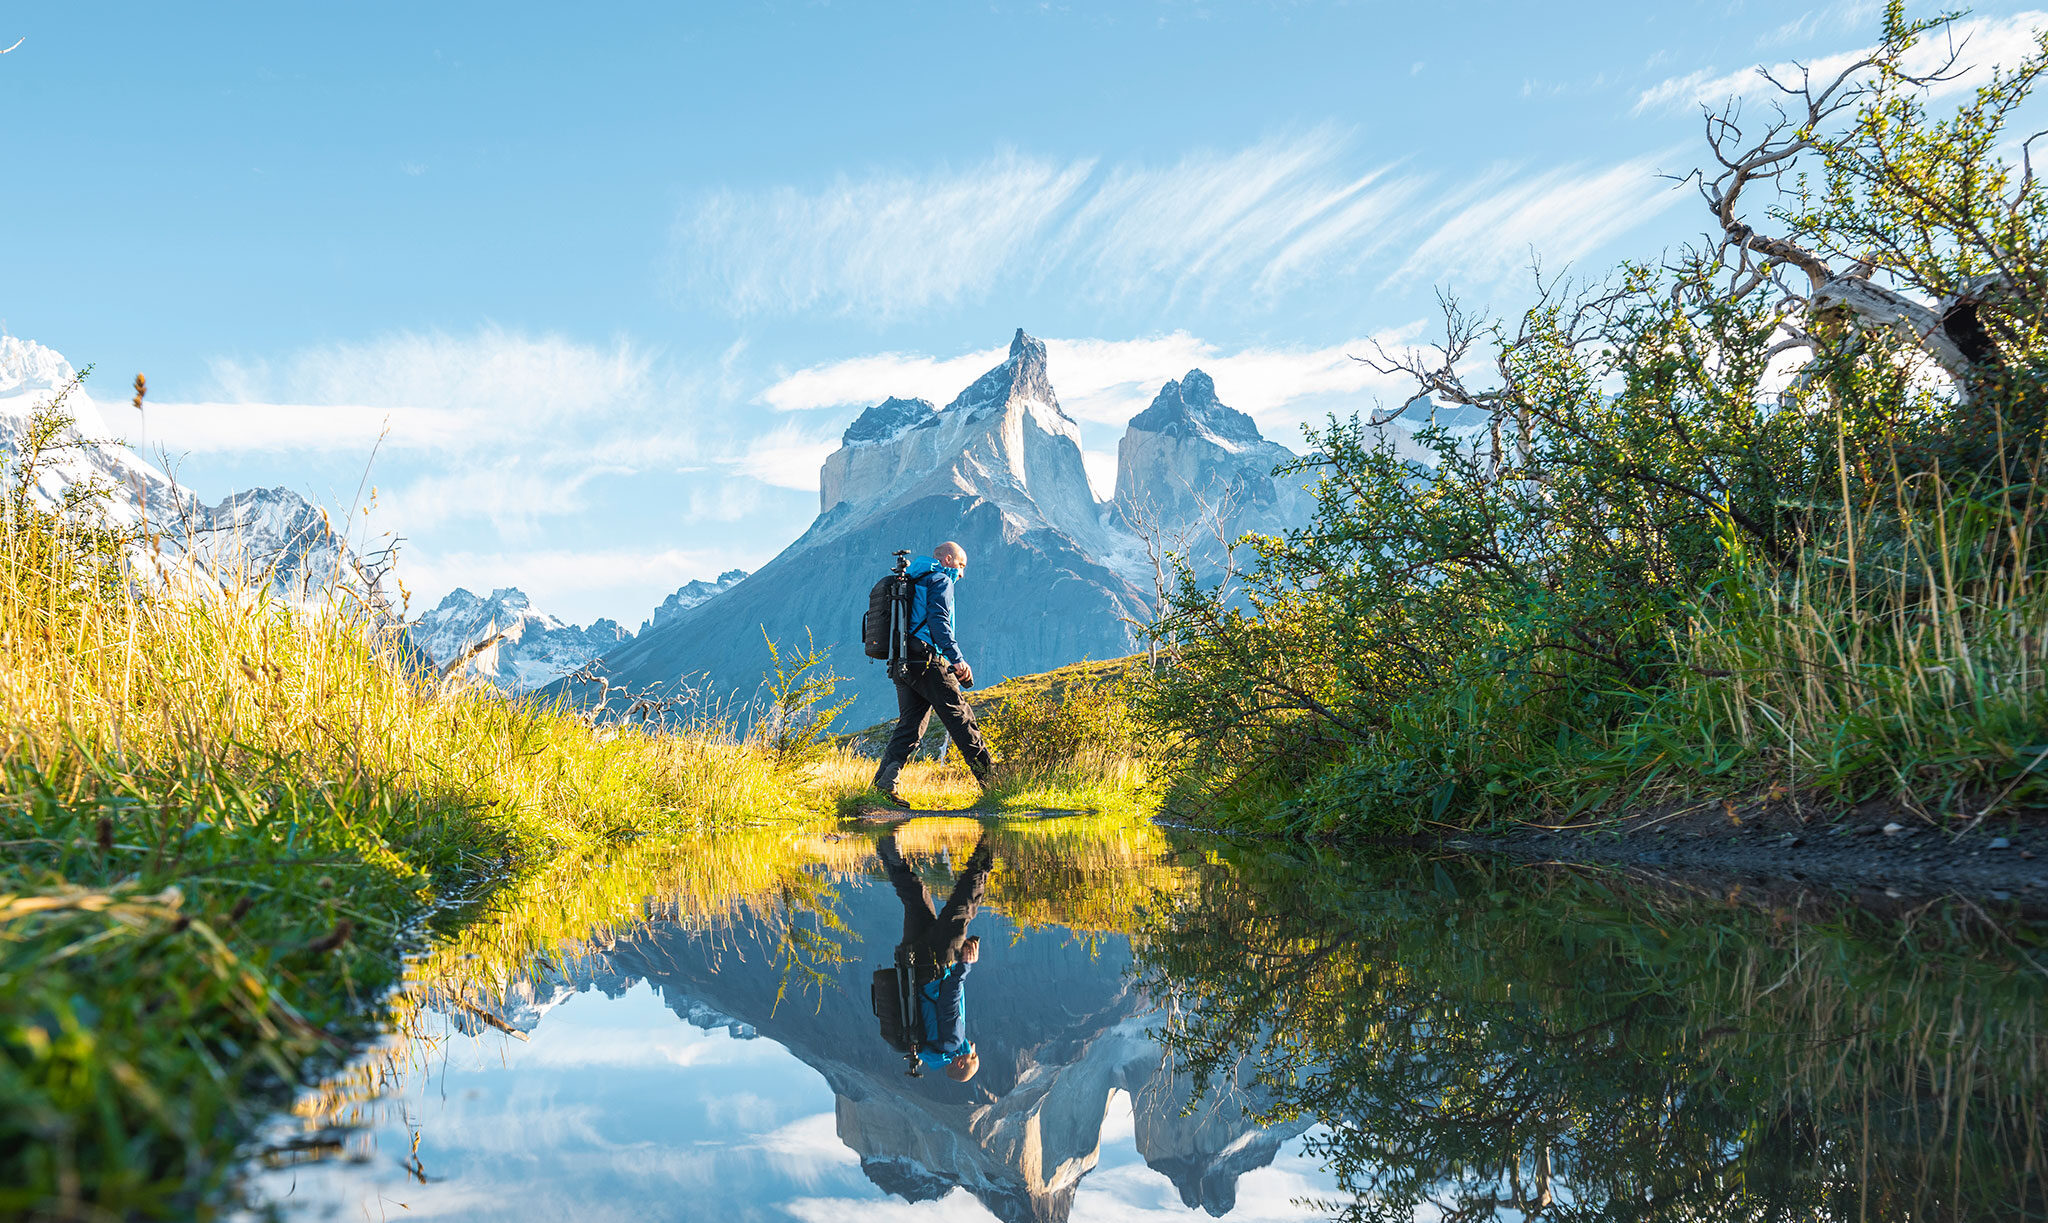 Viajante com equipamento fotográfico atravessa um açude diante de montanhas com picos agudos ao fundo.